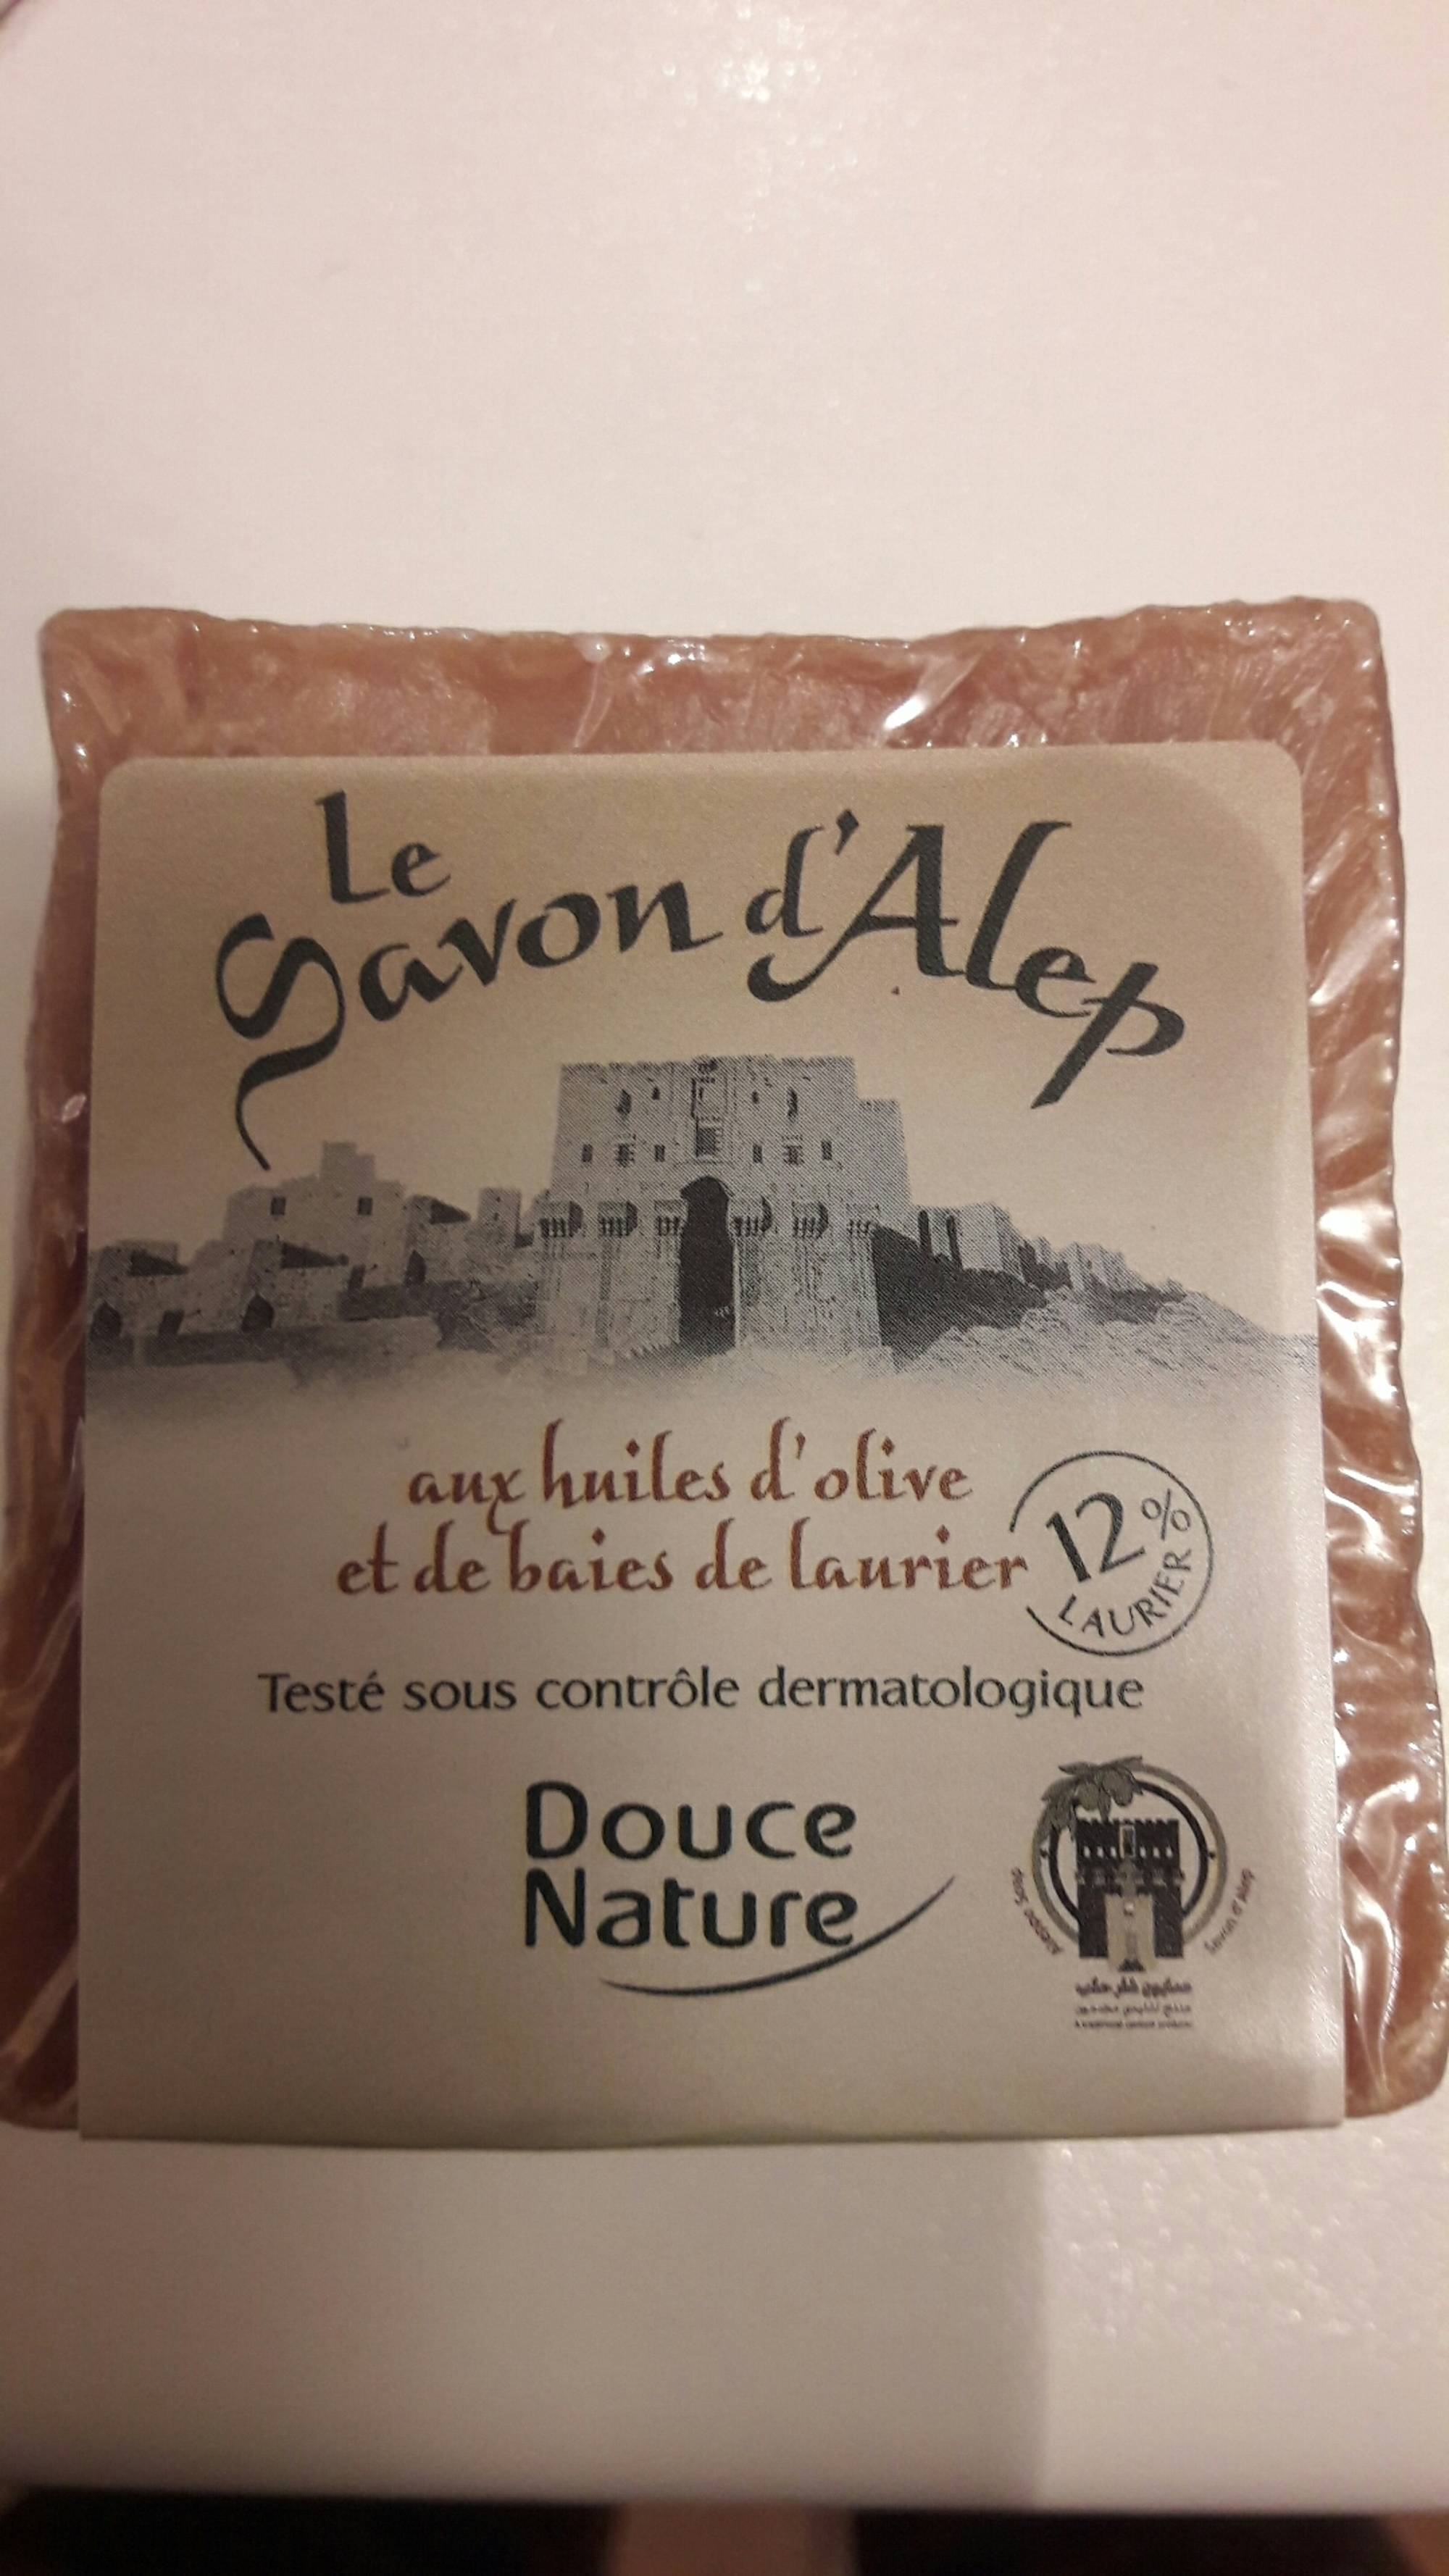 DOUCE NATURE - Le savon d'Alep - Aux huiles d'olive et de baies de laurier